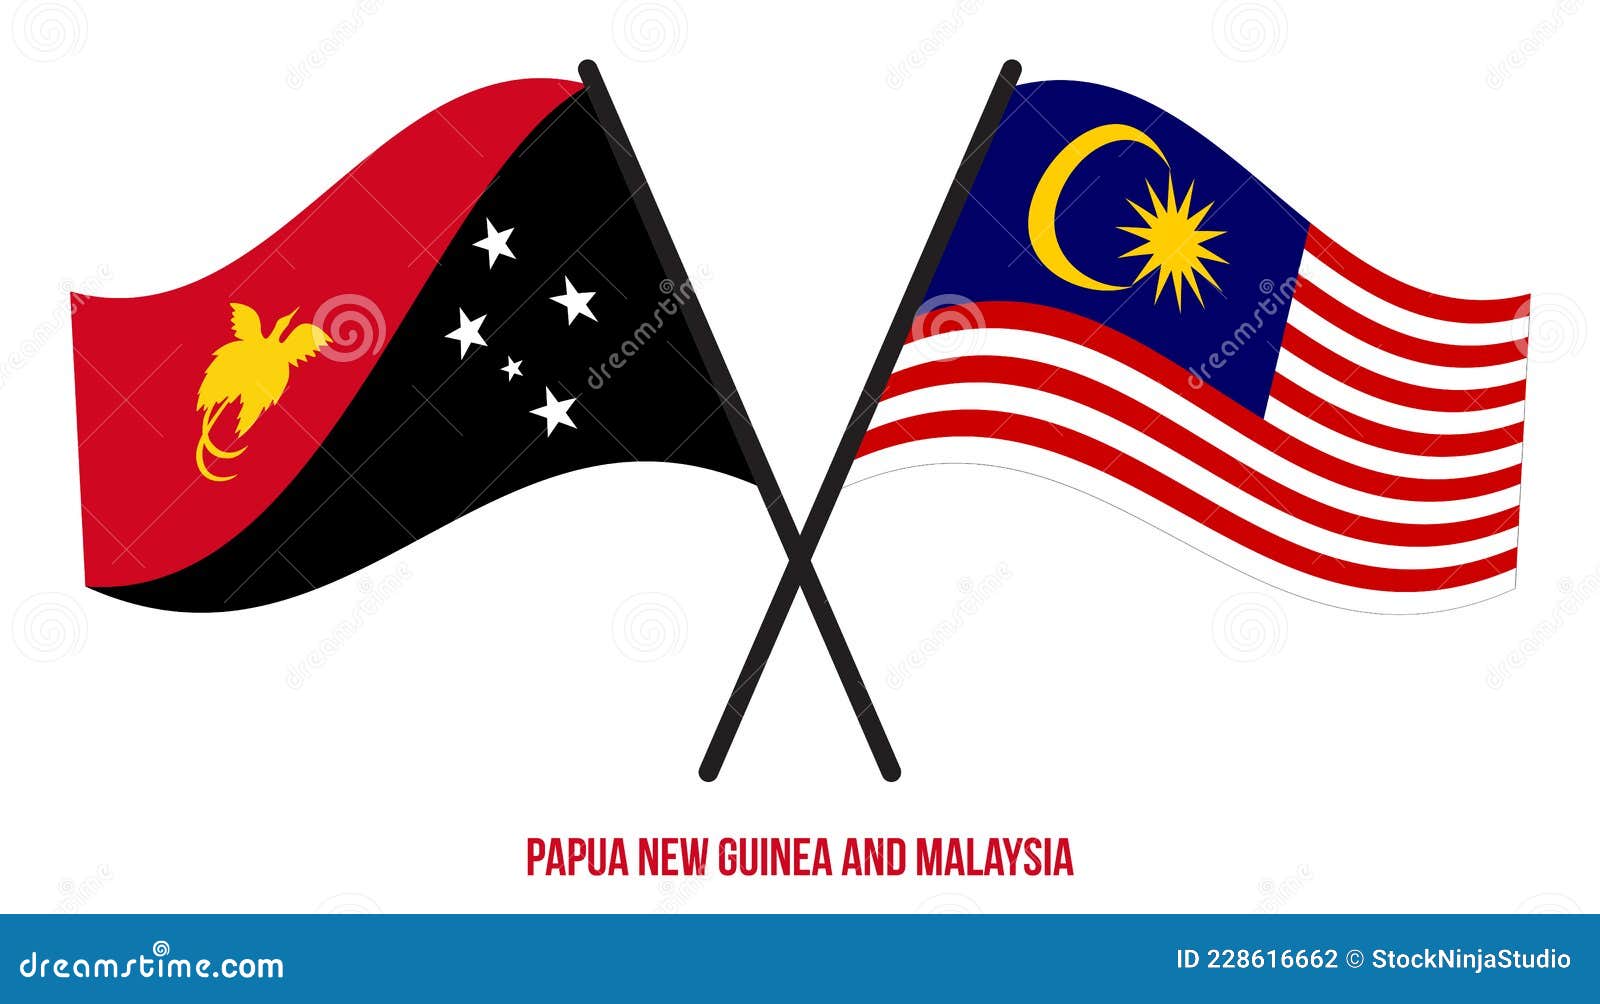 Malaysia vs papua new guinea